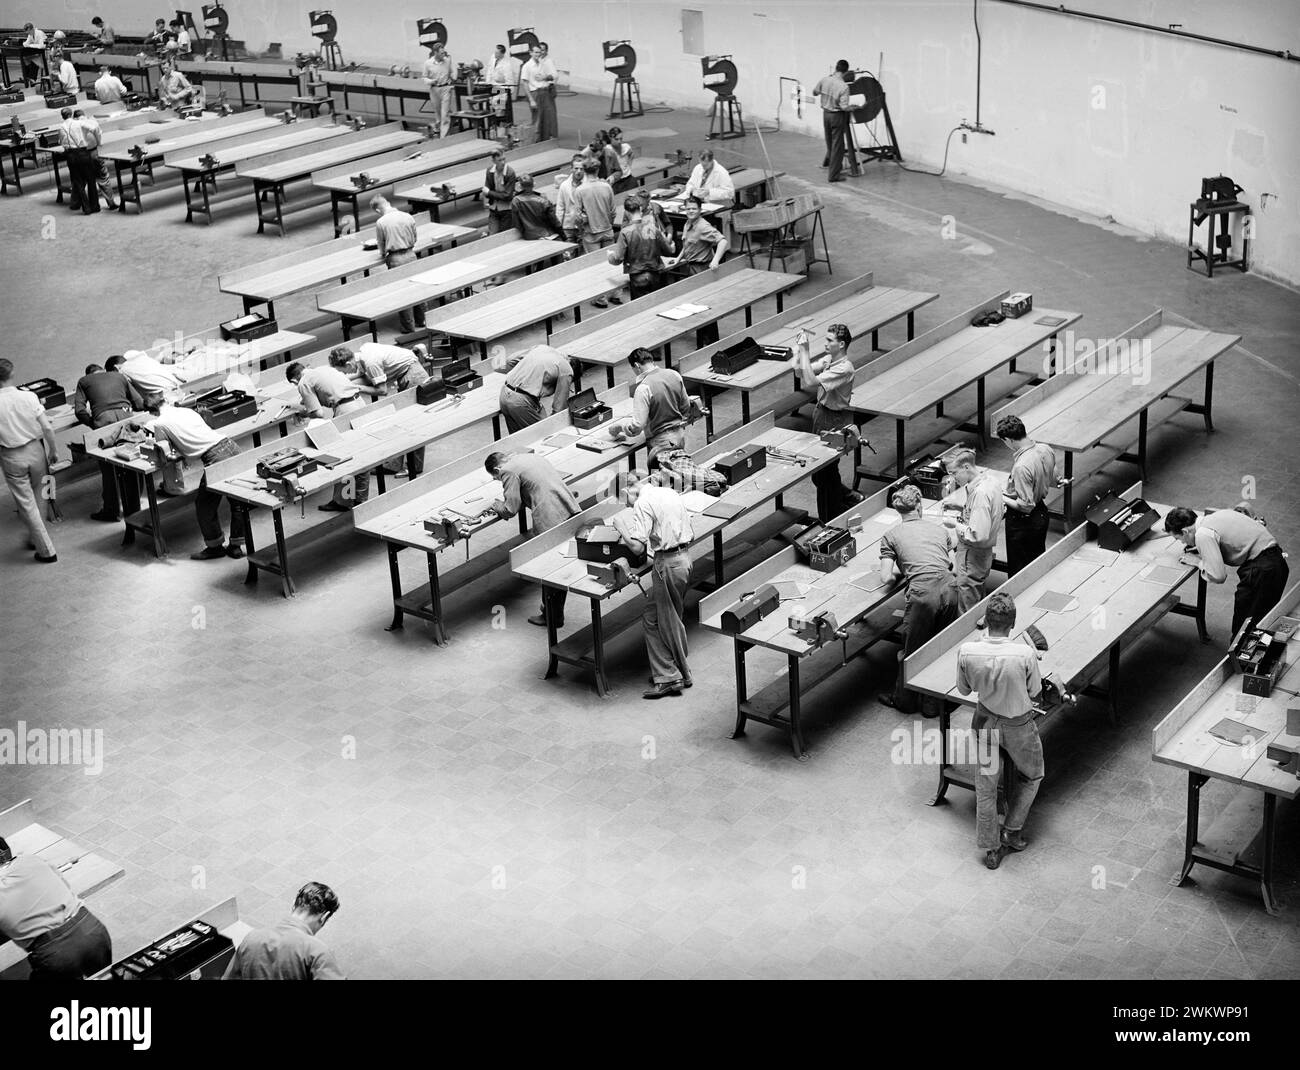 Vue en angle élevé de l'atelier à l'école professionnelle pour les travailleurs de la construction d'aéronefs, San Diego, Californie, États-Unis, Russell Lee, U.S. Farm Security Administration, mai 1941 Banque D'Images